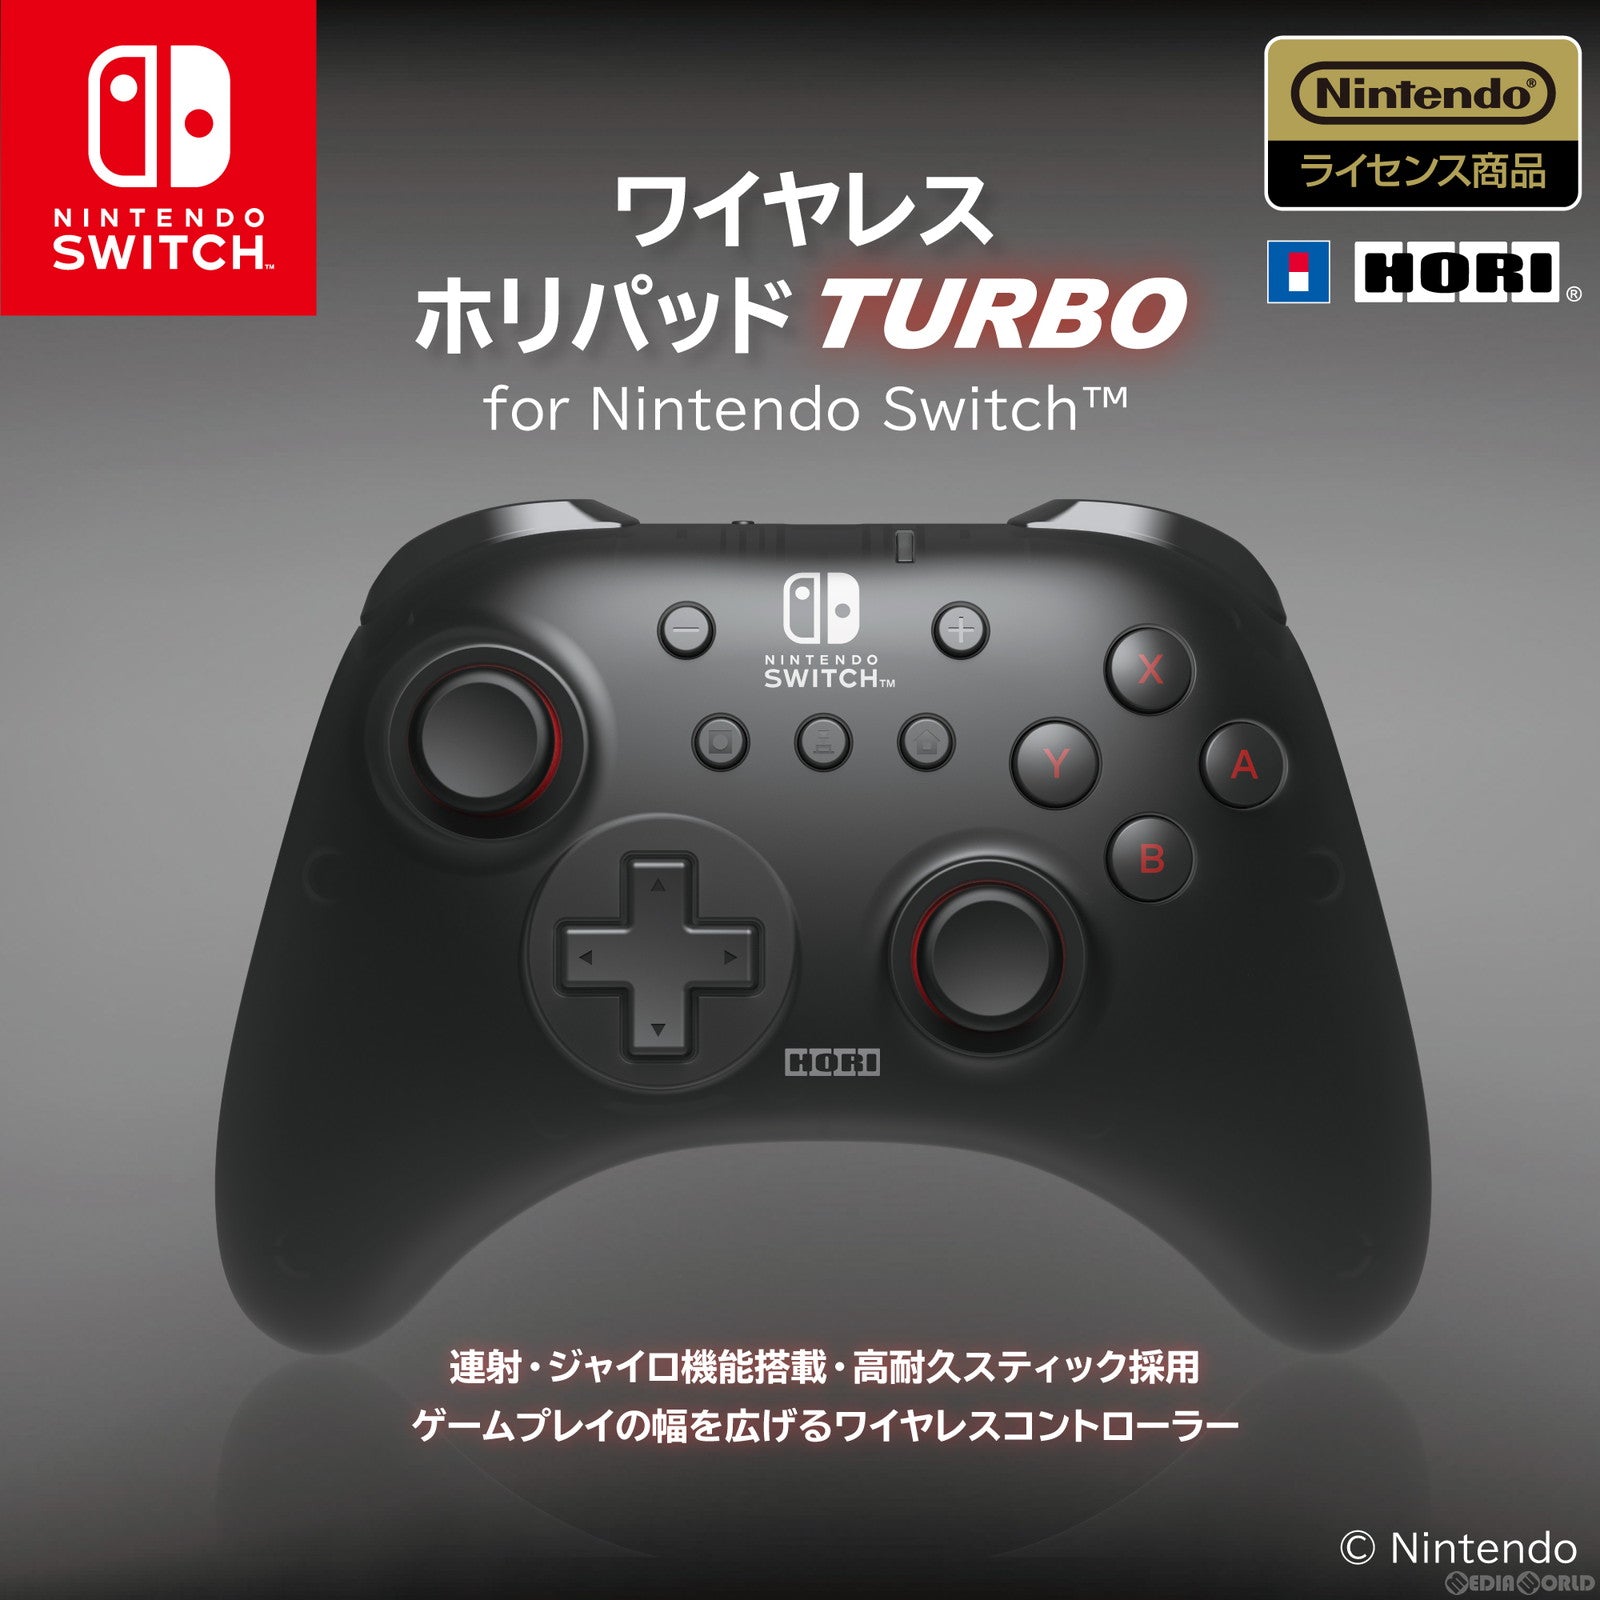 【新品即納】[ACC][Switch]ワイヤレスホリパッド TURBO(ターボ) for Nintendo Switch(ニンテンドースイッチ)  任天堂ライセンス商品 HORI(NSW-461)(20230921)